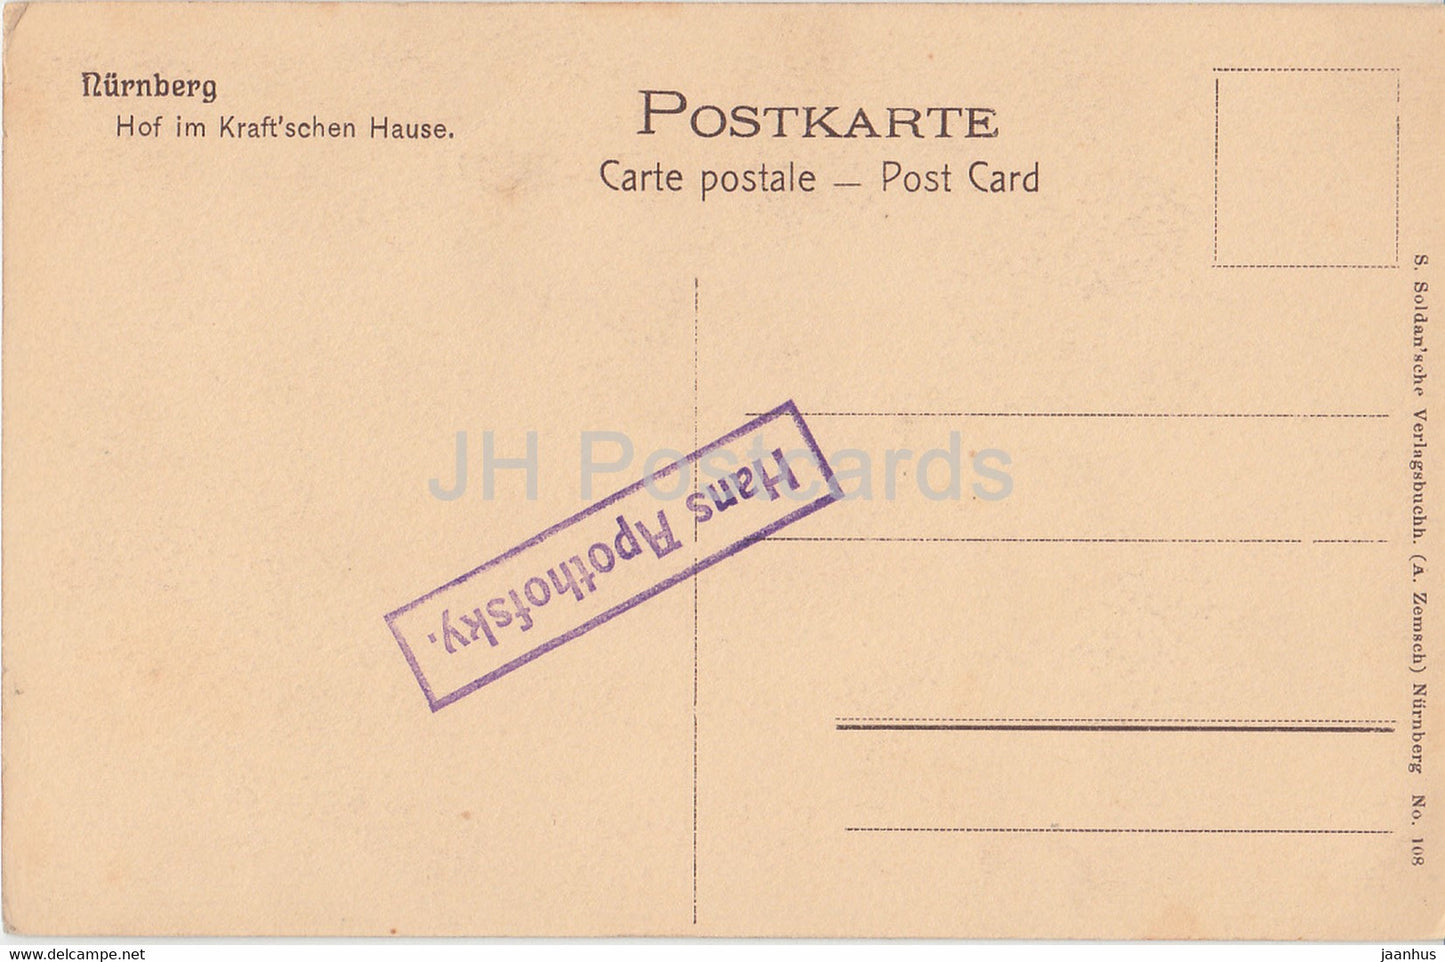 Nurnberg - Hof Im Kraft'schen Hause - old postcard - Germany - unused